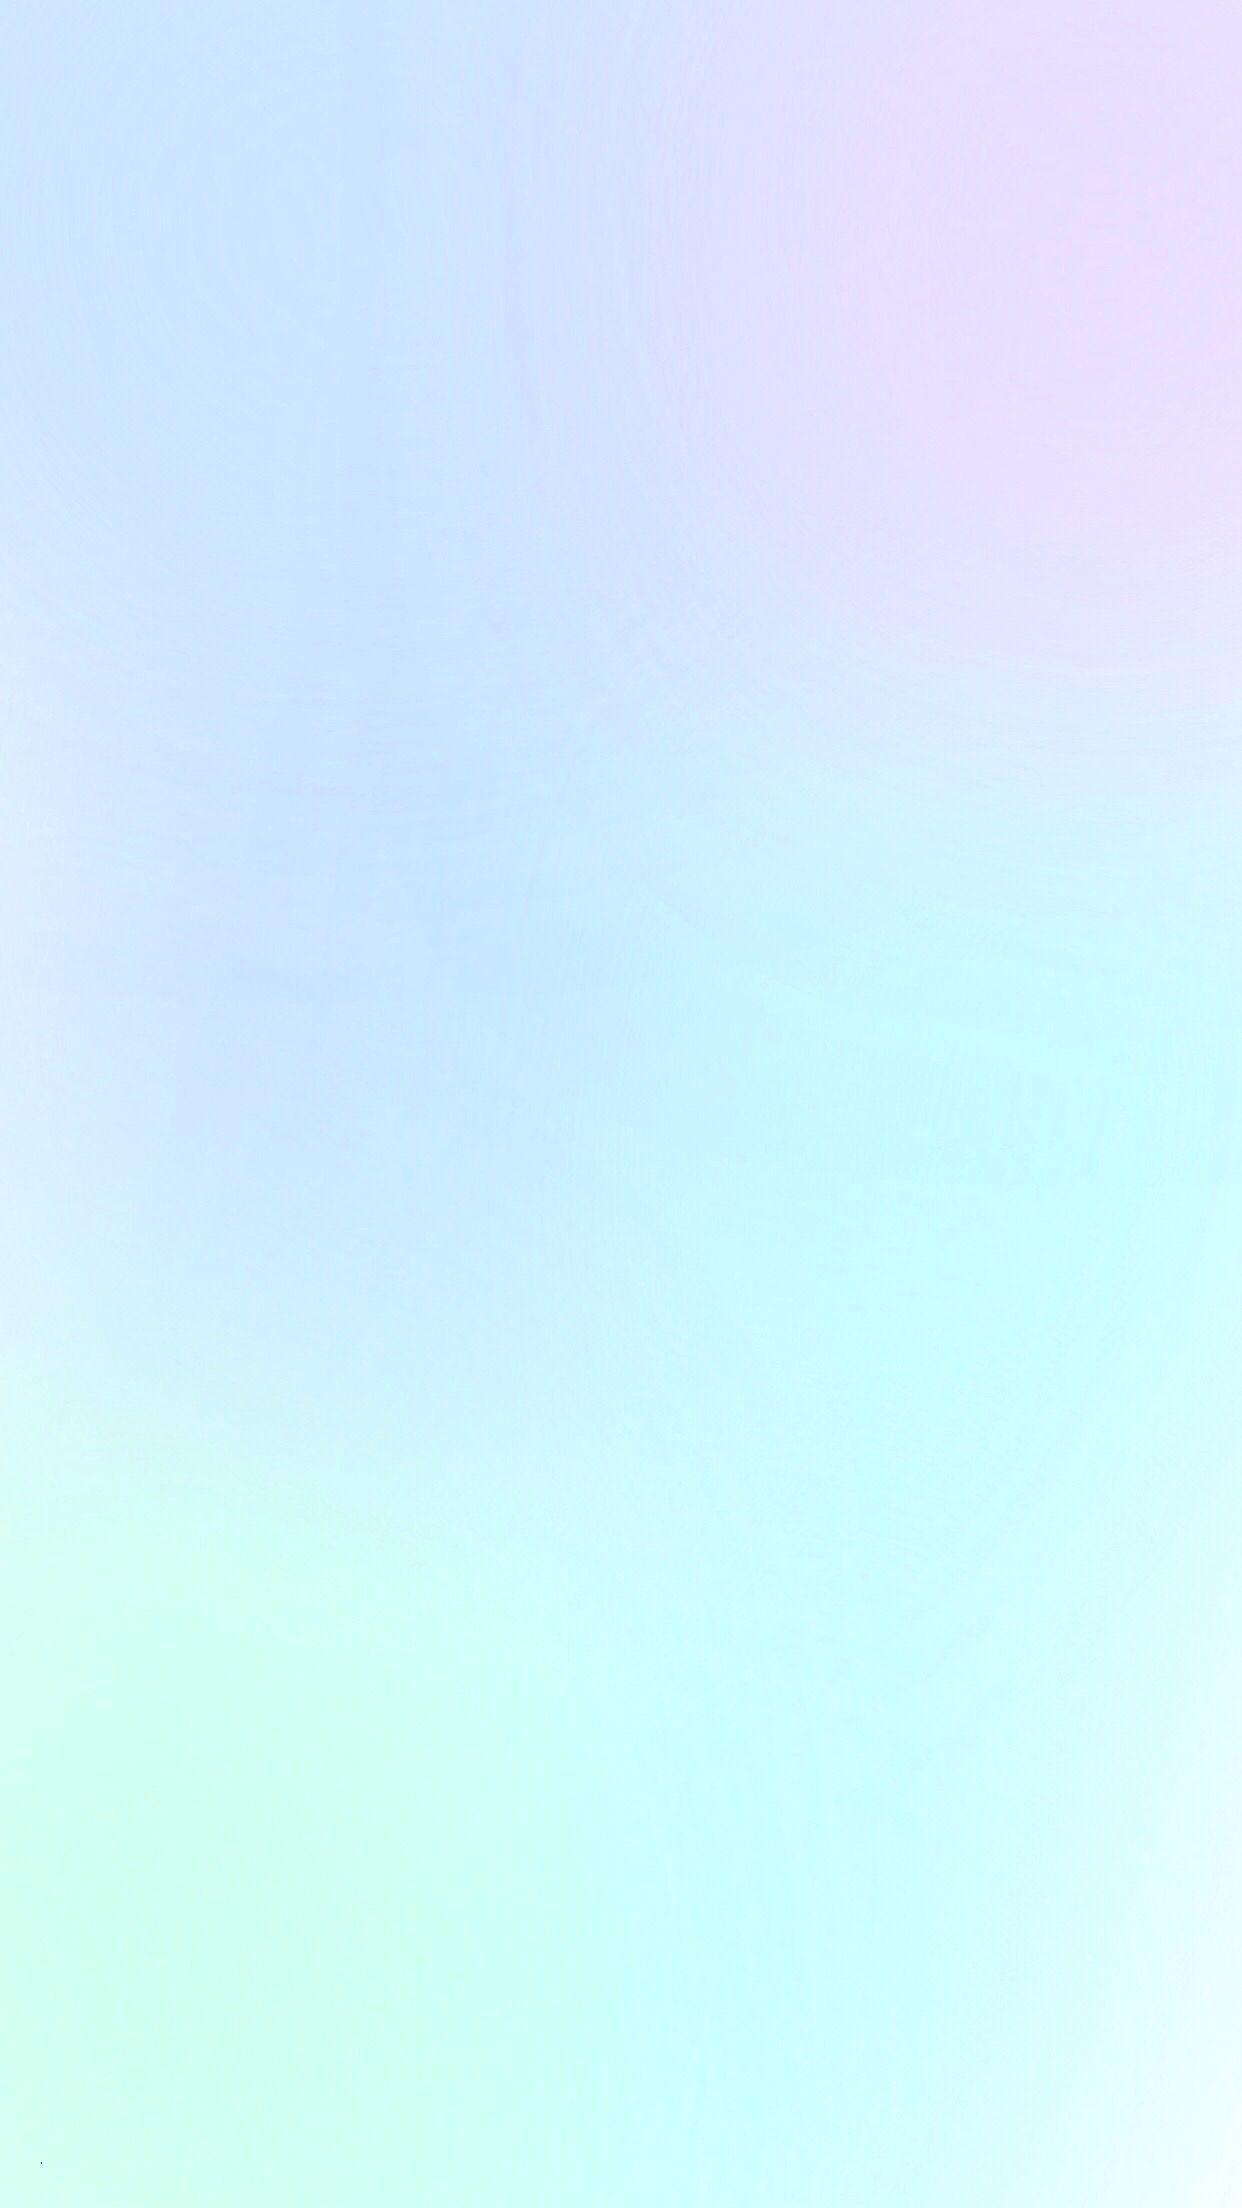 1242x2208 Hình nền thẩm mỹ Pastel theo nhu cầu lớn Pastel màu xanh tím bạc hà